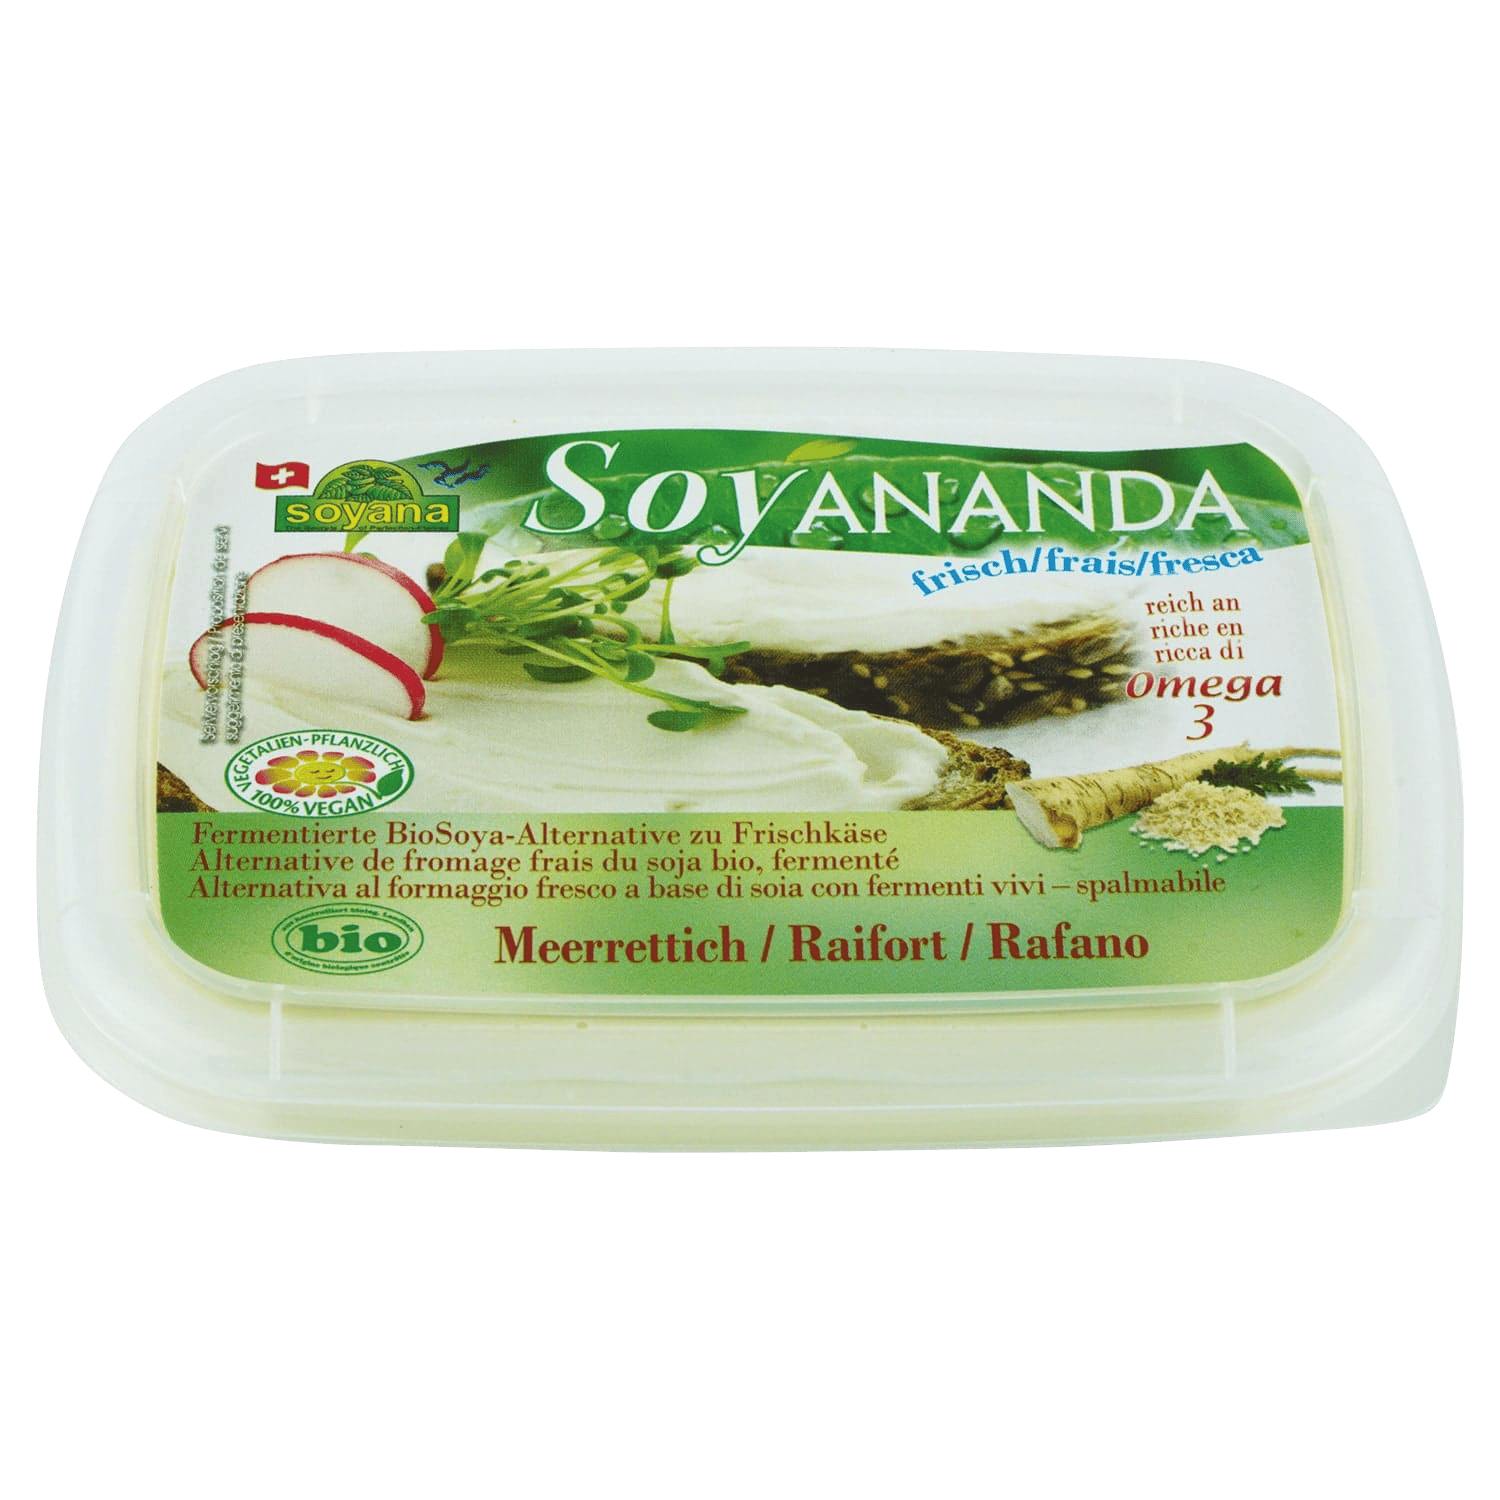 Soyananda Vegan Alternative To Cream Cheese Horseradish, Organic, 140g